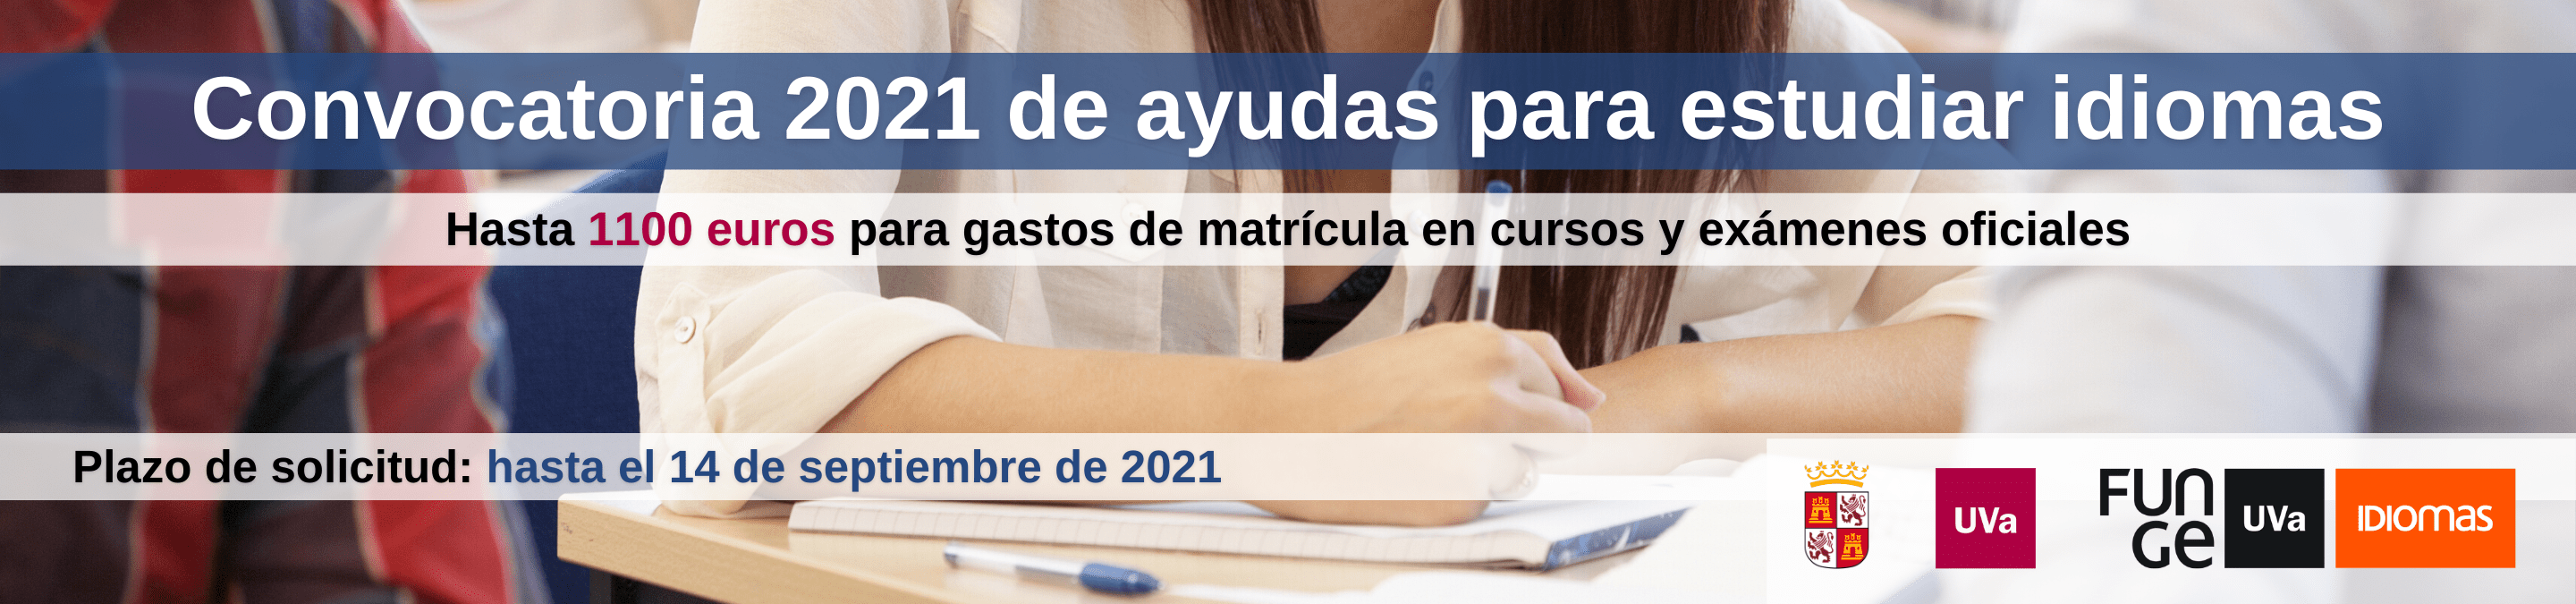 Ayudas estudiar idiomas 2021 Junta CyL becas Centro Idiomas UVa banner